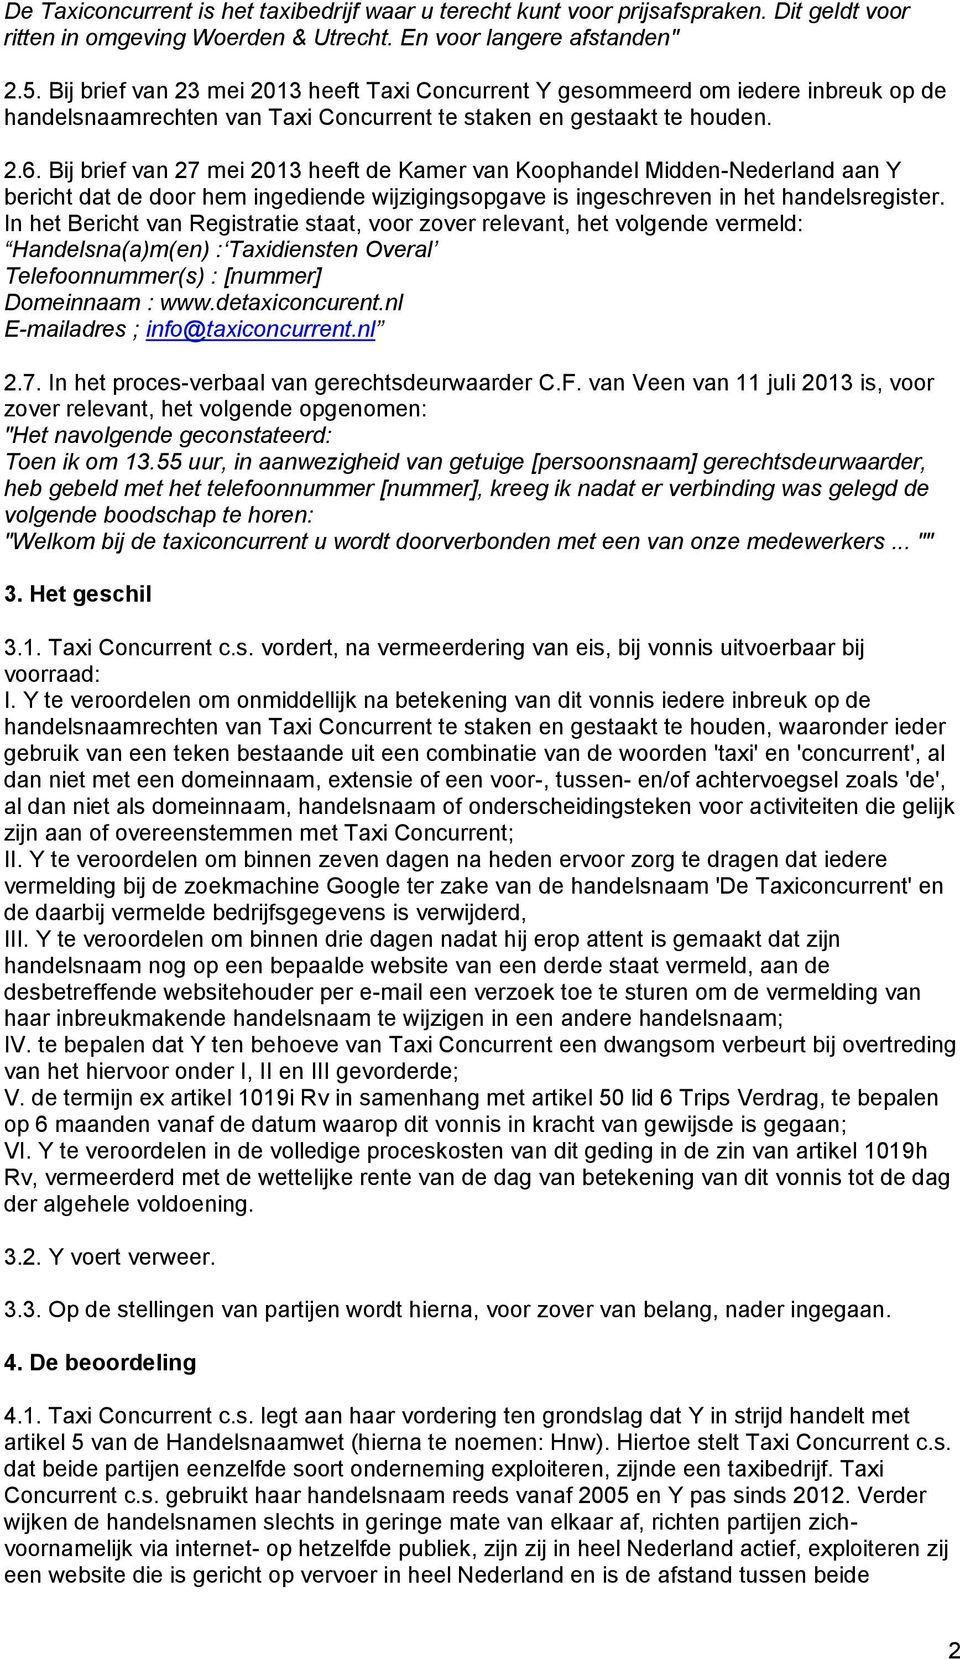 Bij brief van 27 mei 2013 heeft de Kamer van Koophandel Midden-Nederland aan Y bericht dat de door hem ingediende wijzigingsopgave is ingeschreven in het handelsregister.